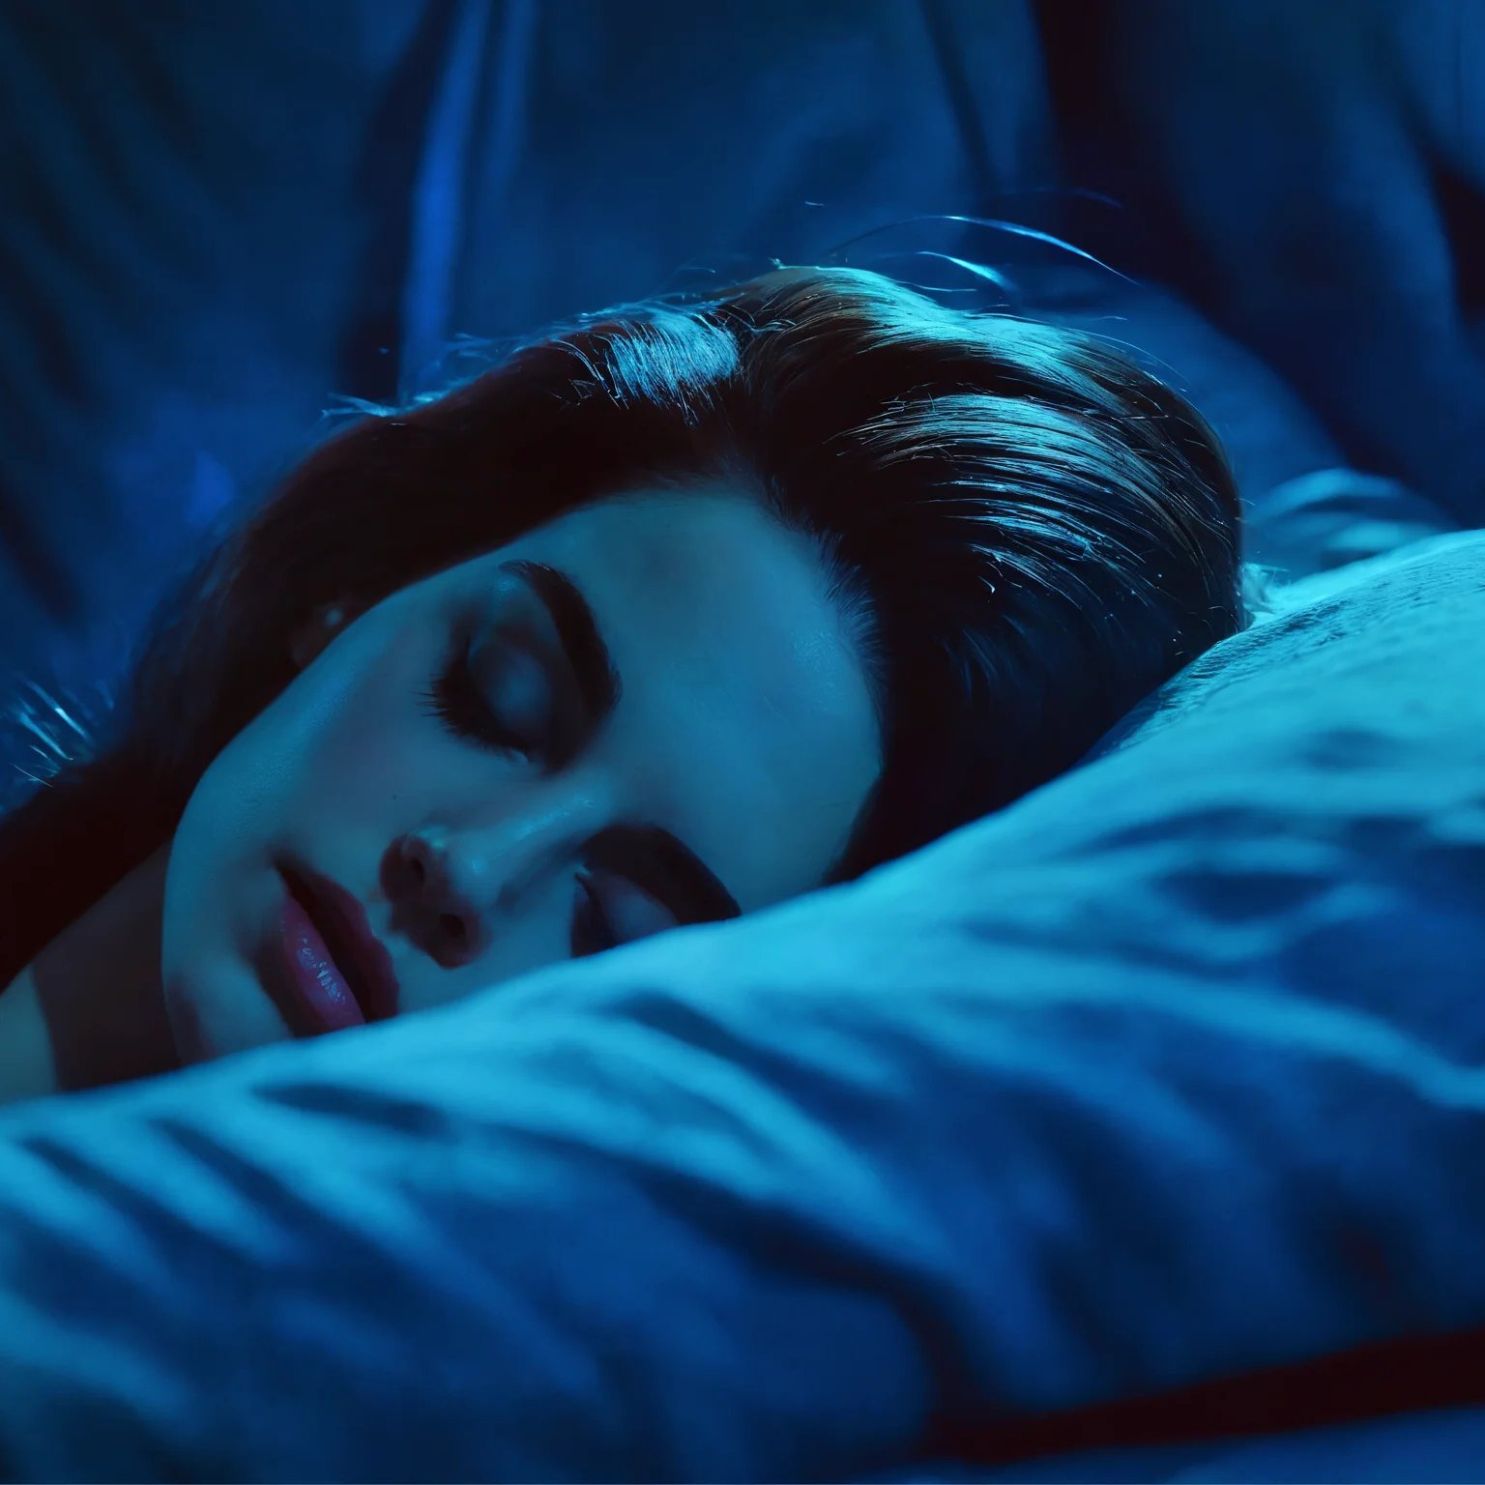 Einschlafhypnose "Träum dich weg". Inspiriert durch Lana del Rey